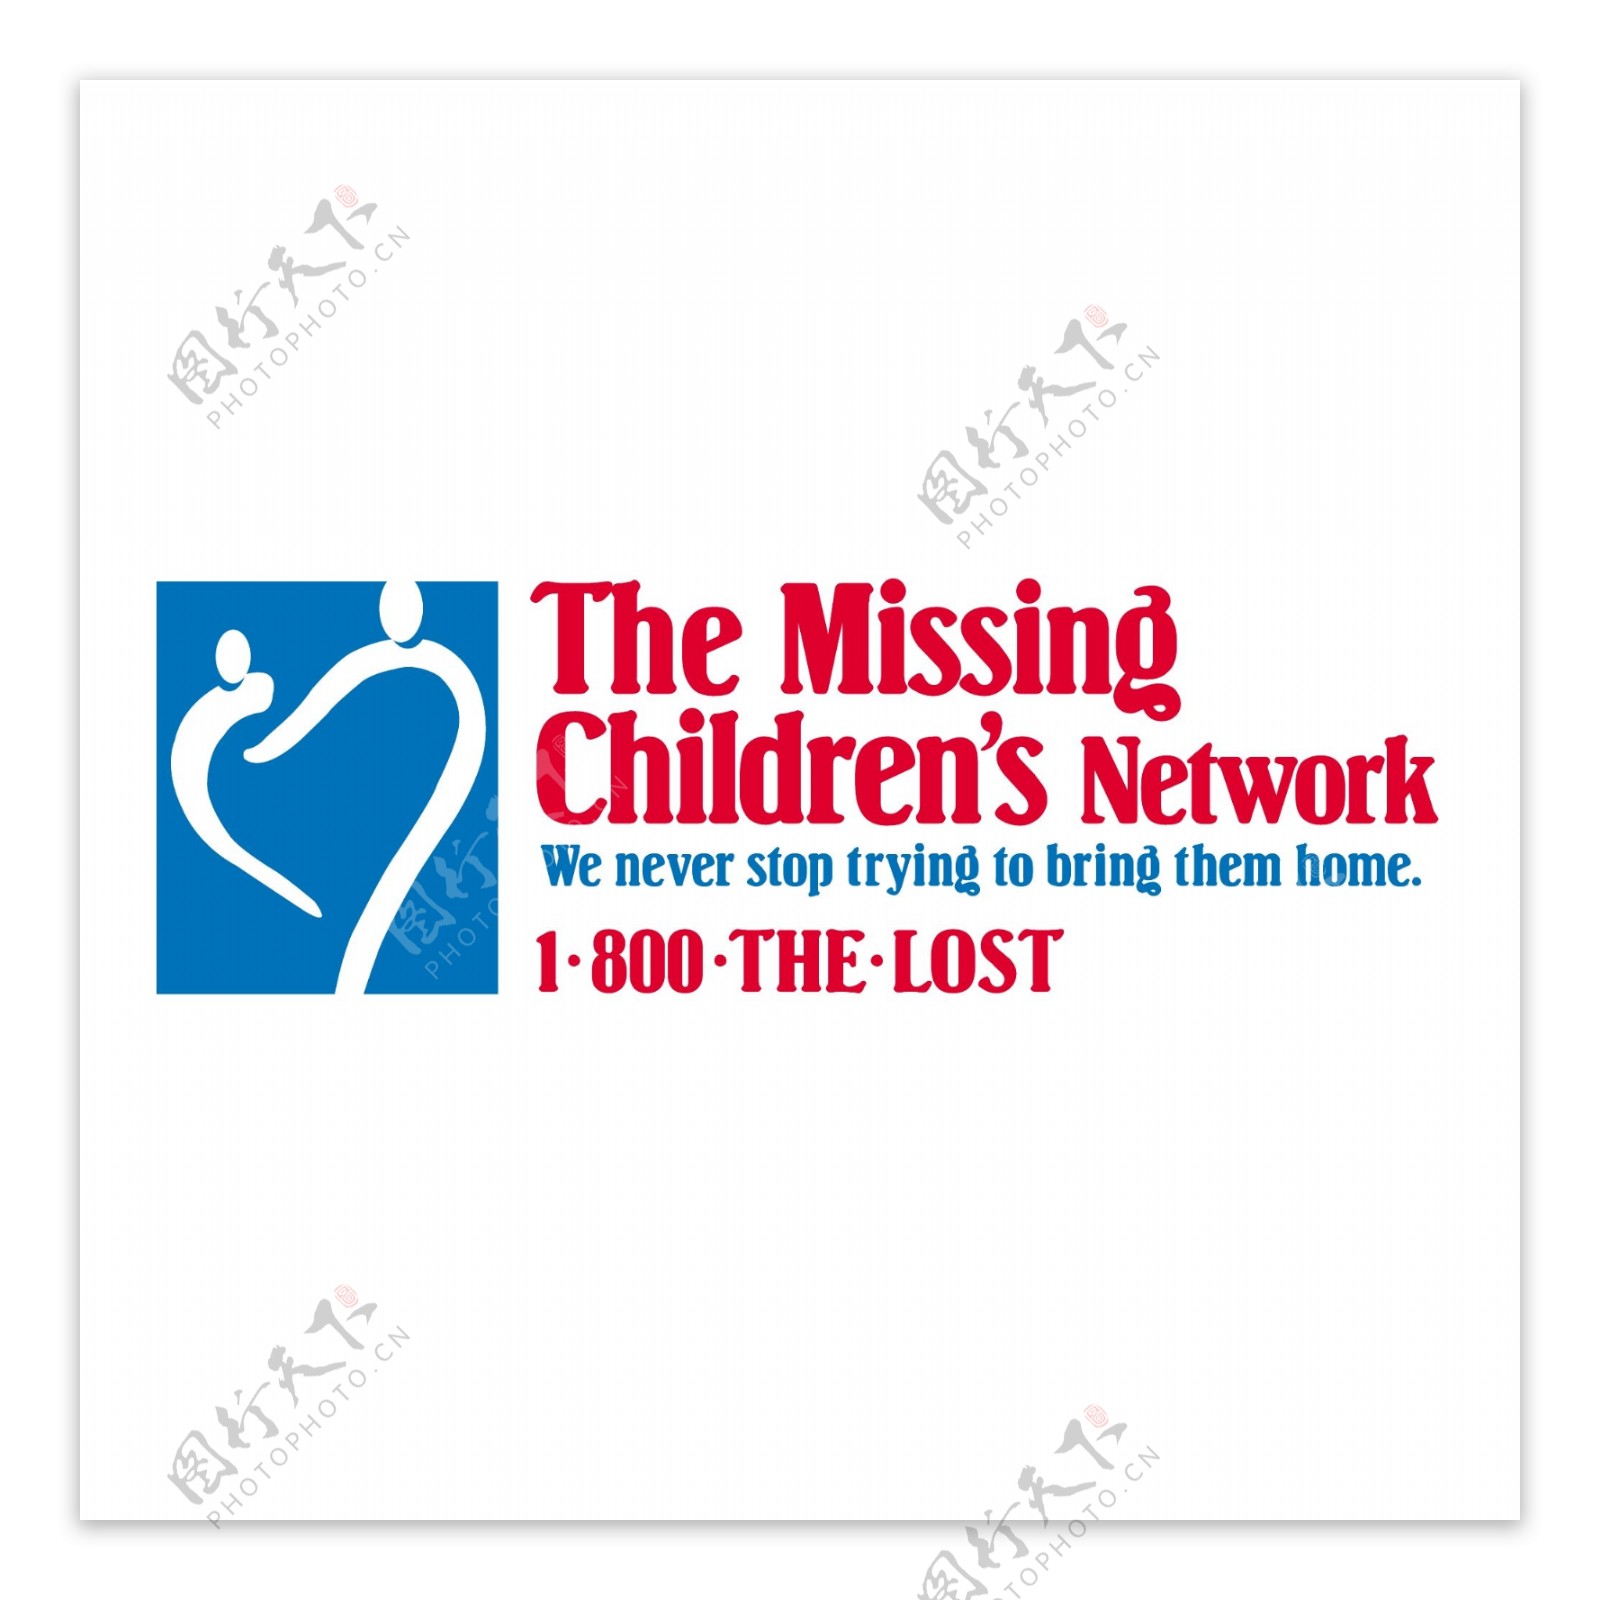 失踪的儿童网络